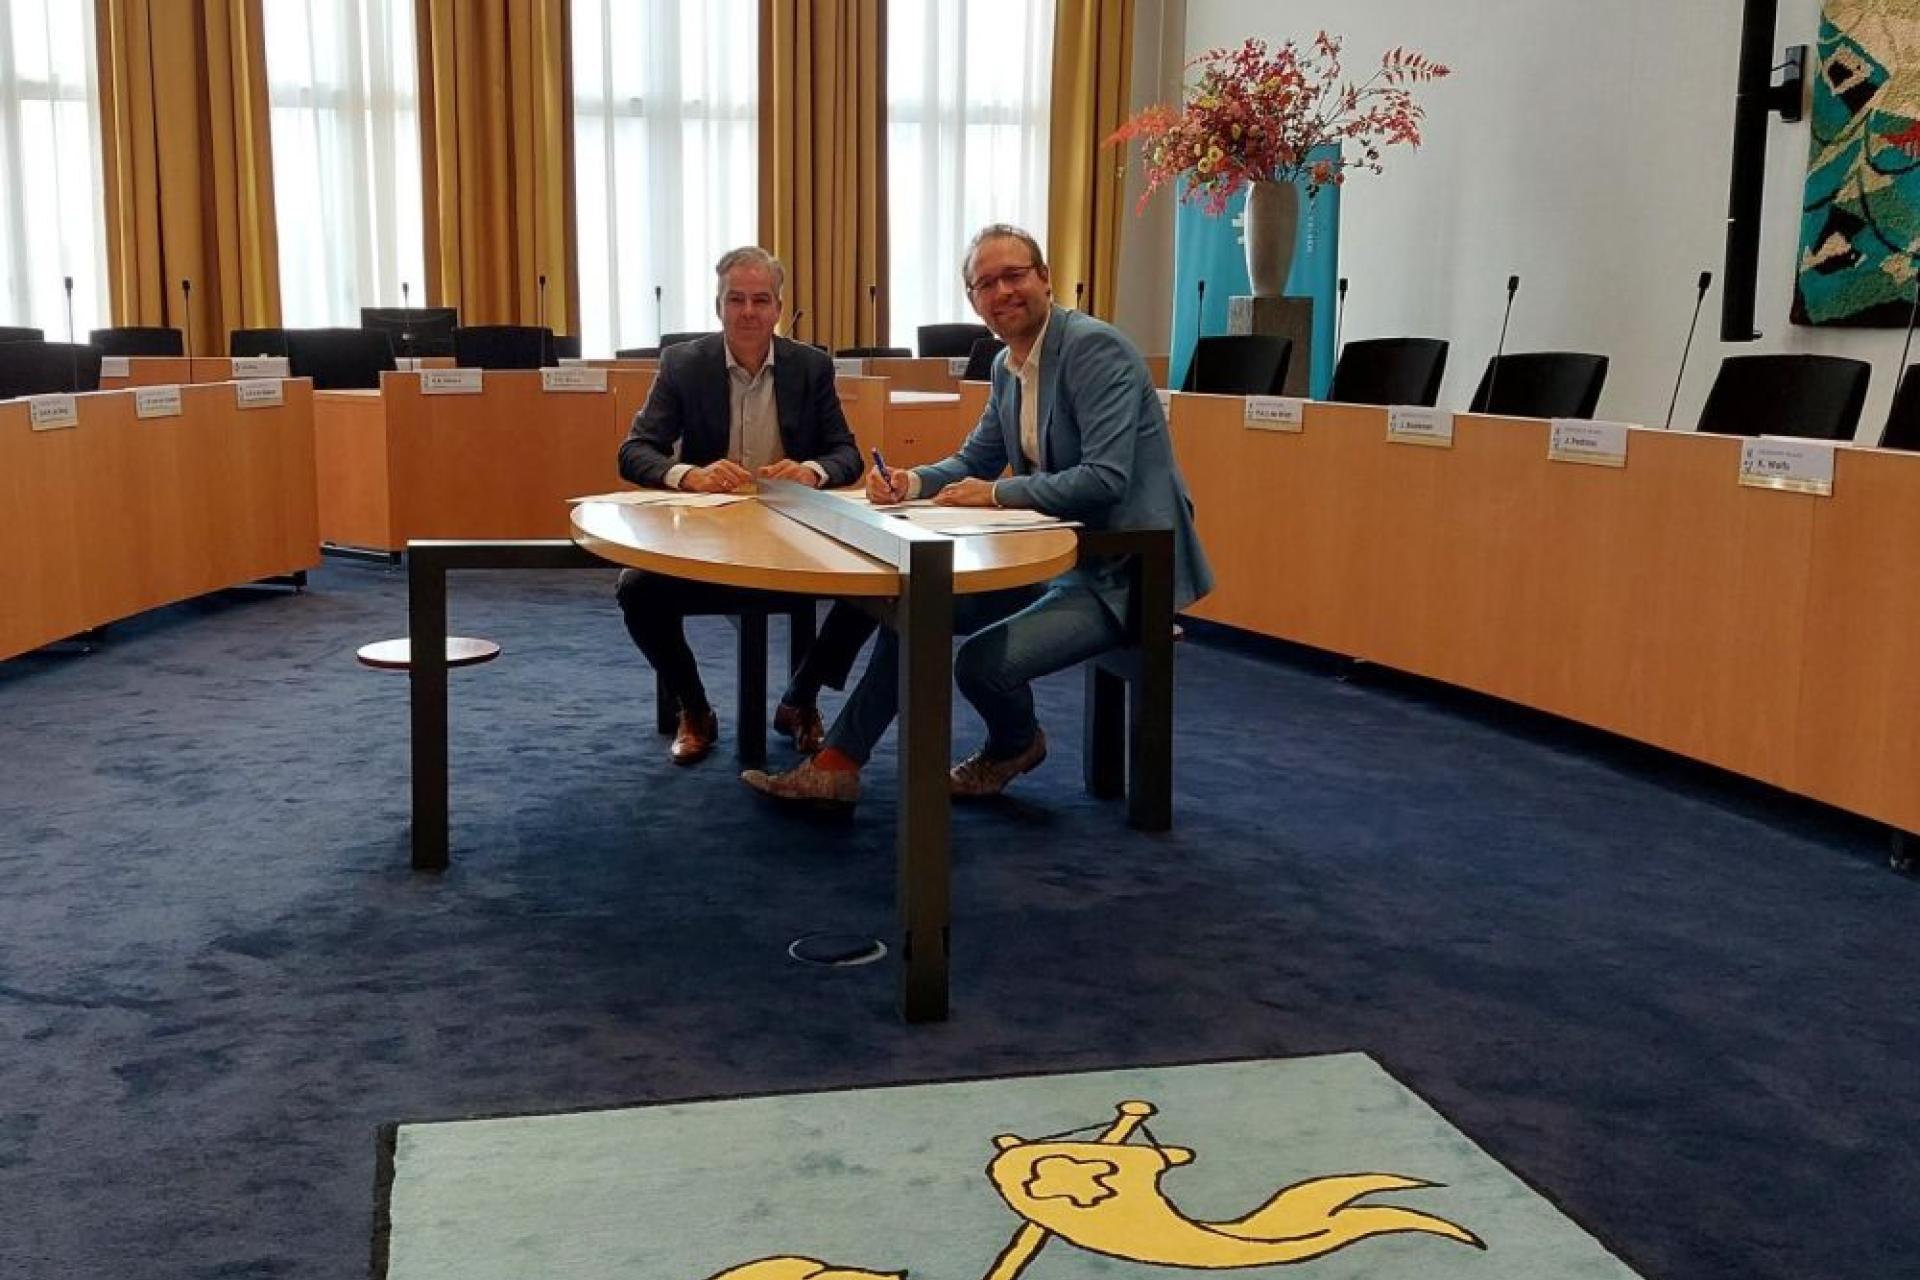 Griffier Ruurd Palstra en Pascal Bakker van NotuBiz ondertekenden  op woensdag 8 juni de contracten voor het opleveren van het nieuwe raadsinformatiesysteem.